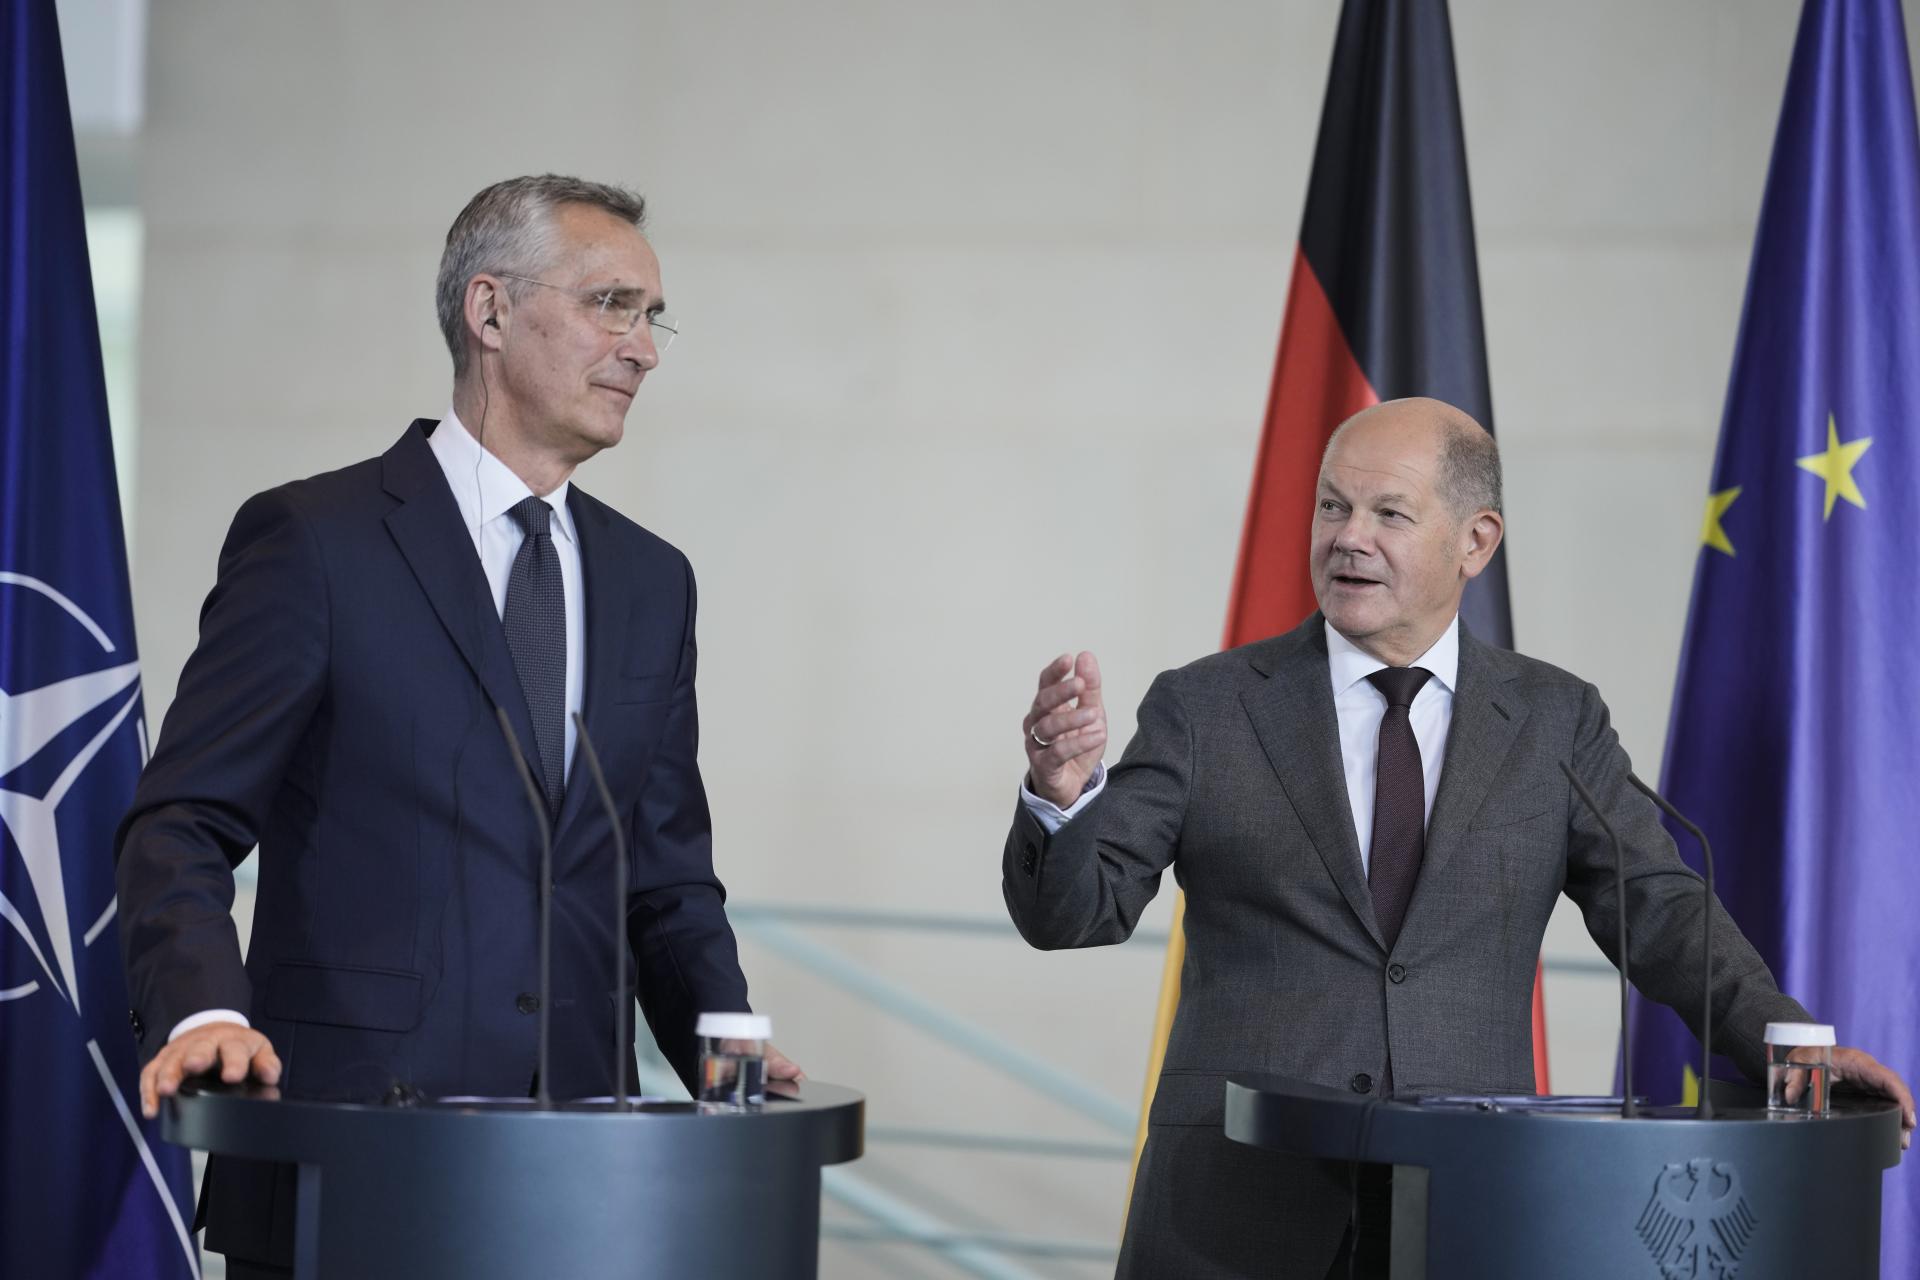 Júlový summit NATO nebude o formálnej pozvánke Kyjeva do aliancie, vyhlásil Stoltenberg